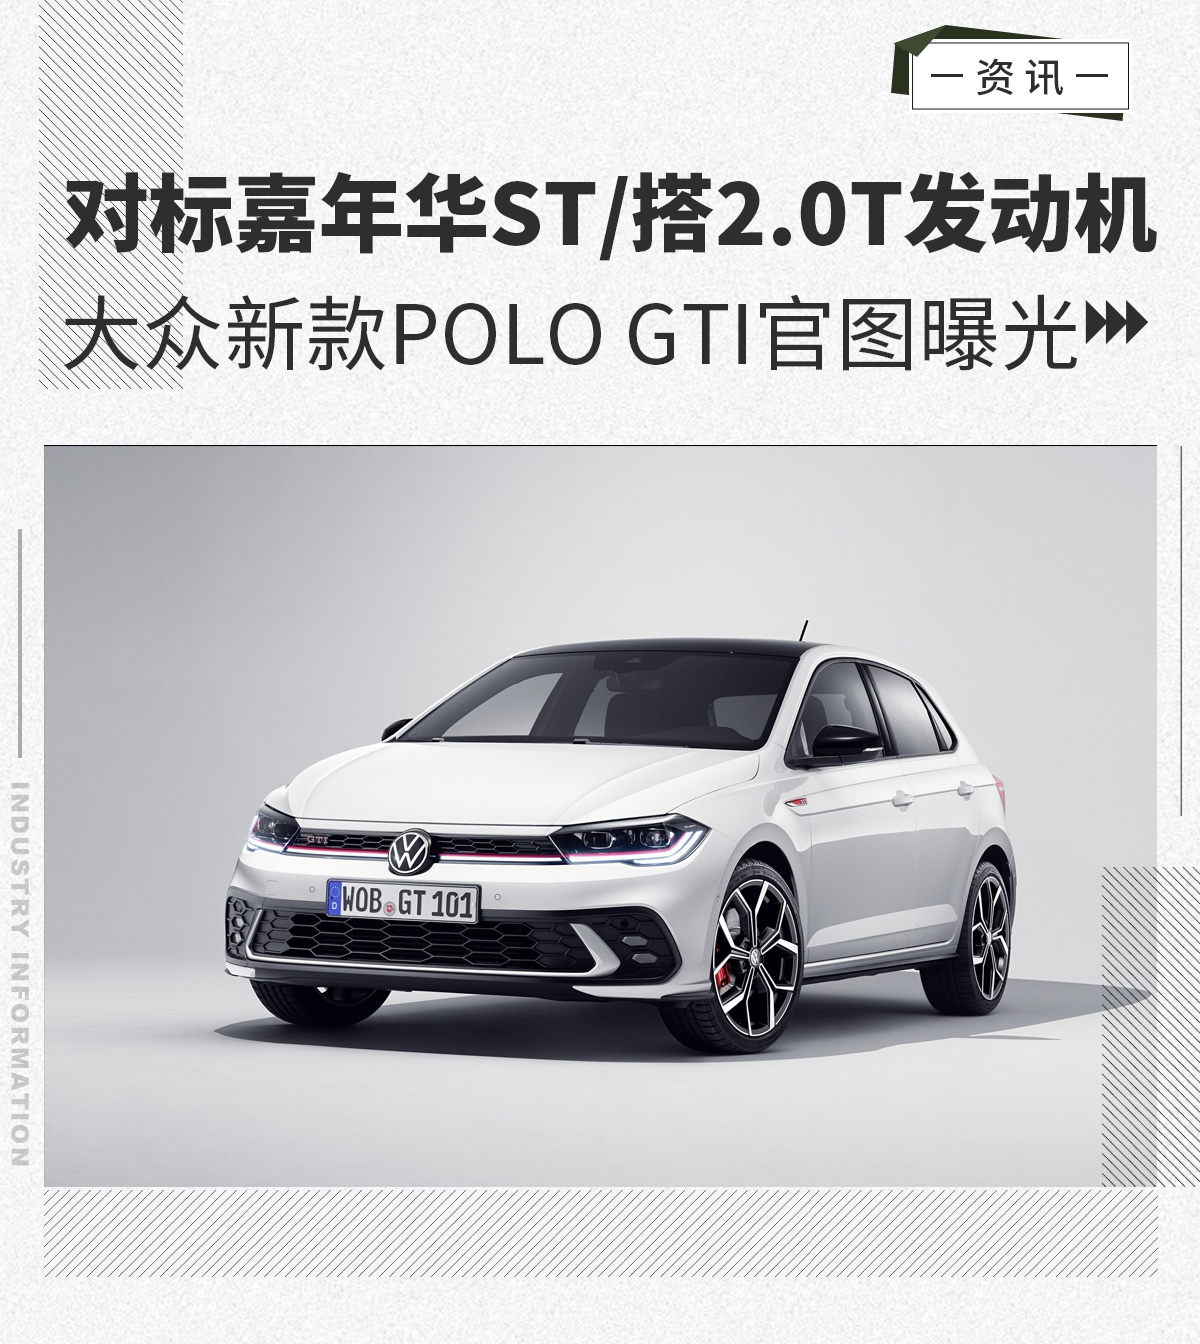 大众新款Polo GTI官图曝光 对标嘉年华ST/搭2.0T